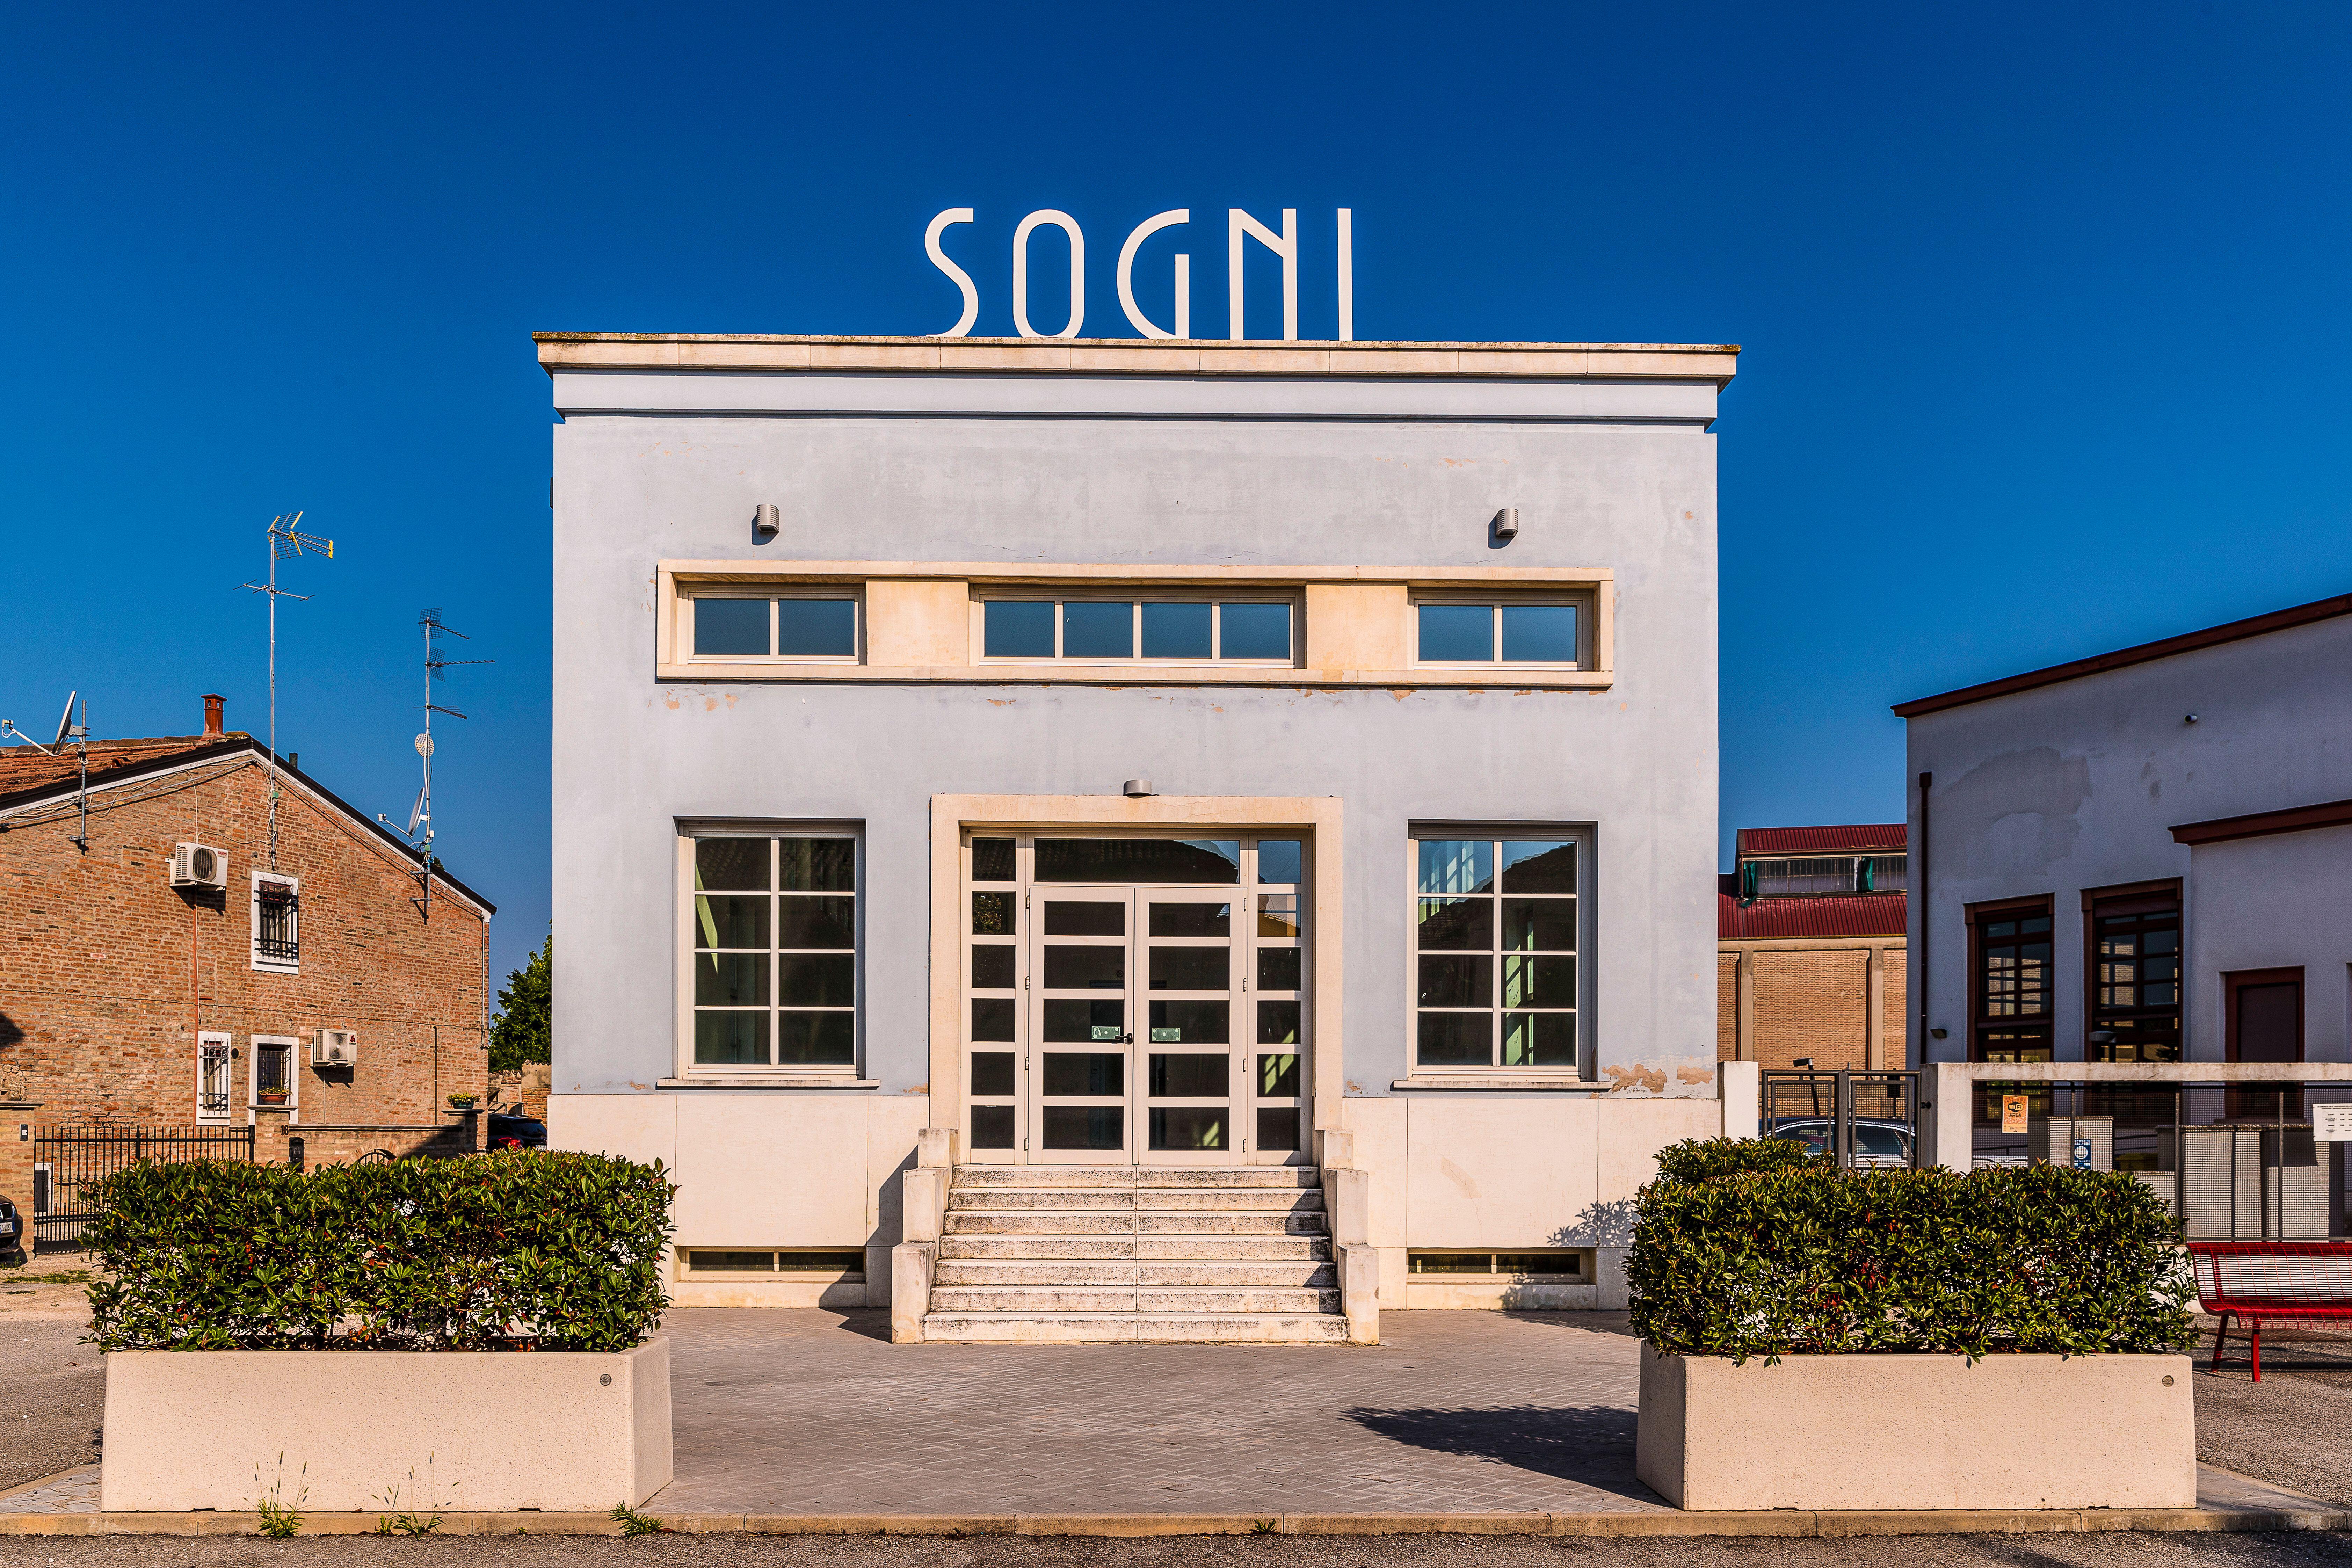 Tresigallos beliebtestes Gebäude ist das ehemalige Badehaus mit Sogni an der Spitze, was auf Italienisch „Träume“ bedeutet